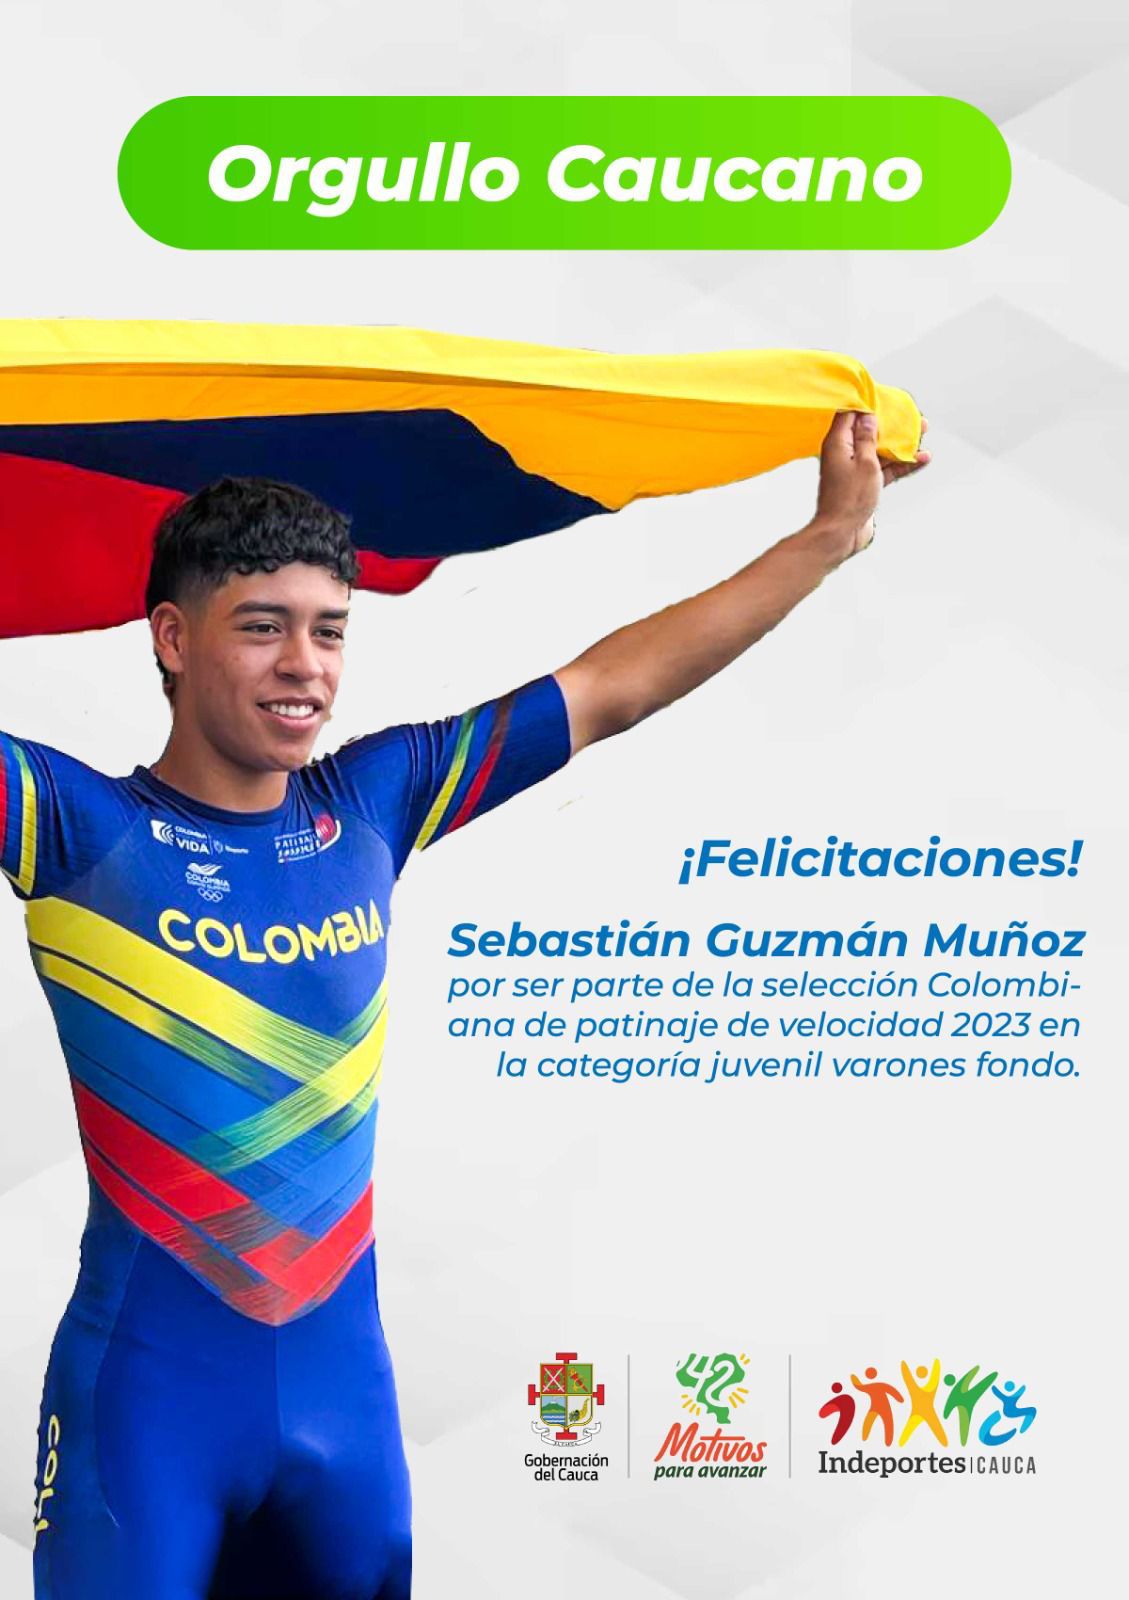 Por el gran desempeño de Sebastián Guzmán Muñoz, miembro del grupo Real Skate Cauca, quién ha sido elegido para representar a la Selección Colombia de Patinaje 2023 en la categoría juvenil varones. 

Estamos muy orgullosos de su dedicación y sabemos que dejará en alto el nombre de nuestro Departamento con su talento y habilidades en la pista.